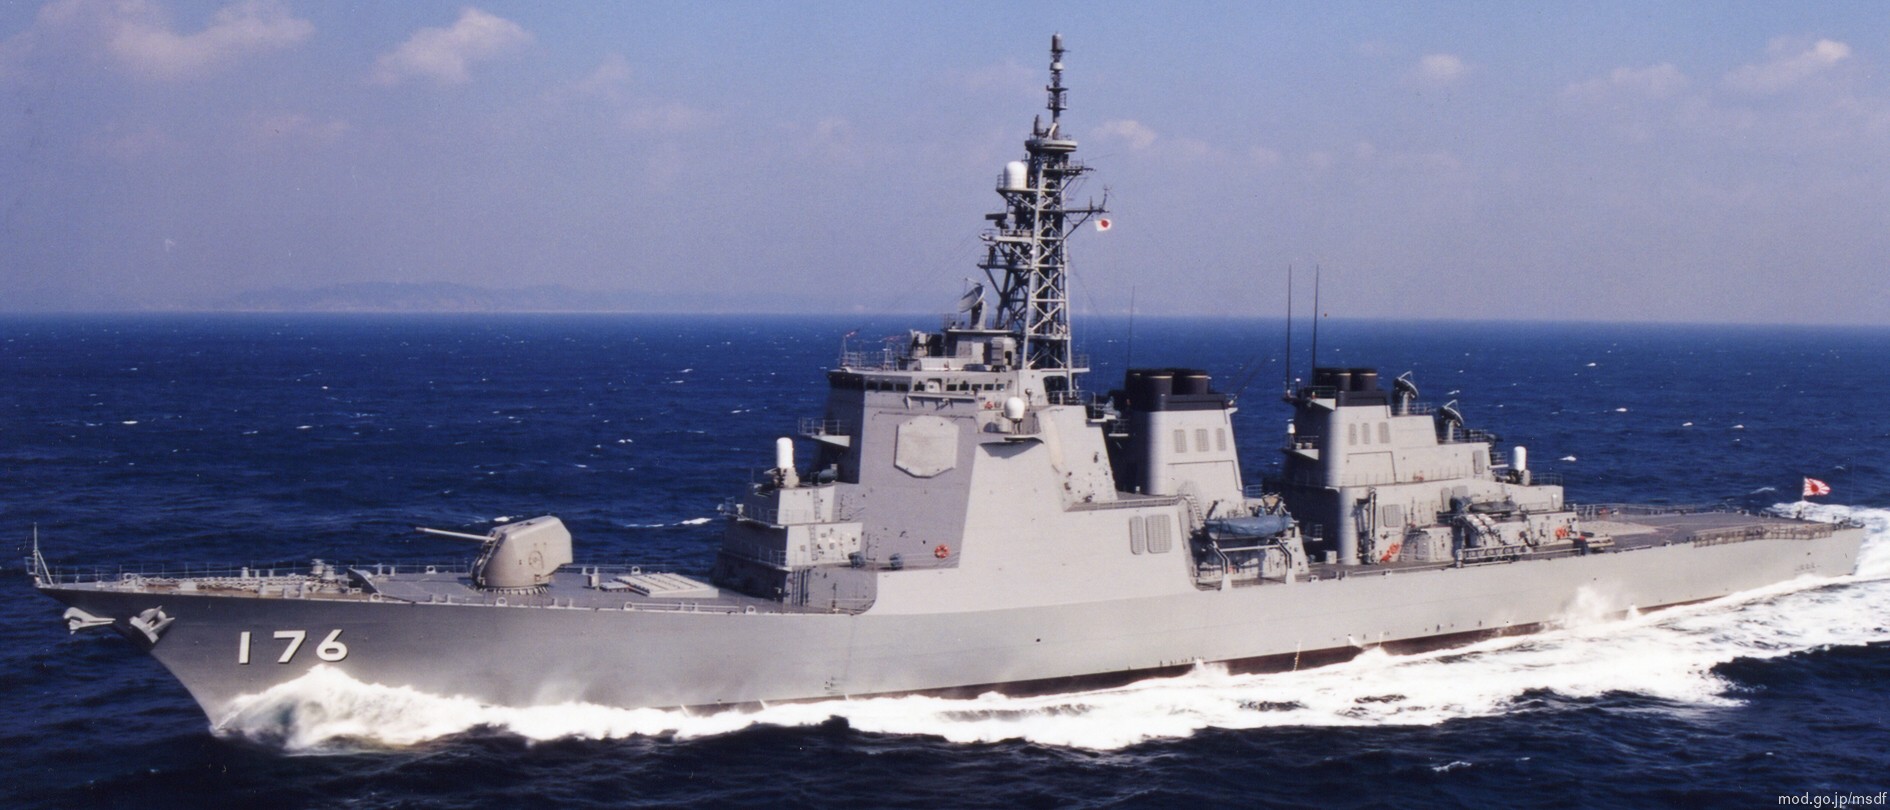 ddg-176 jds chokai kongou class destroyer japan maritime self defense force jmsdf 05